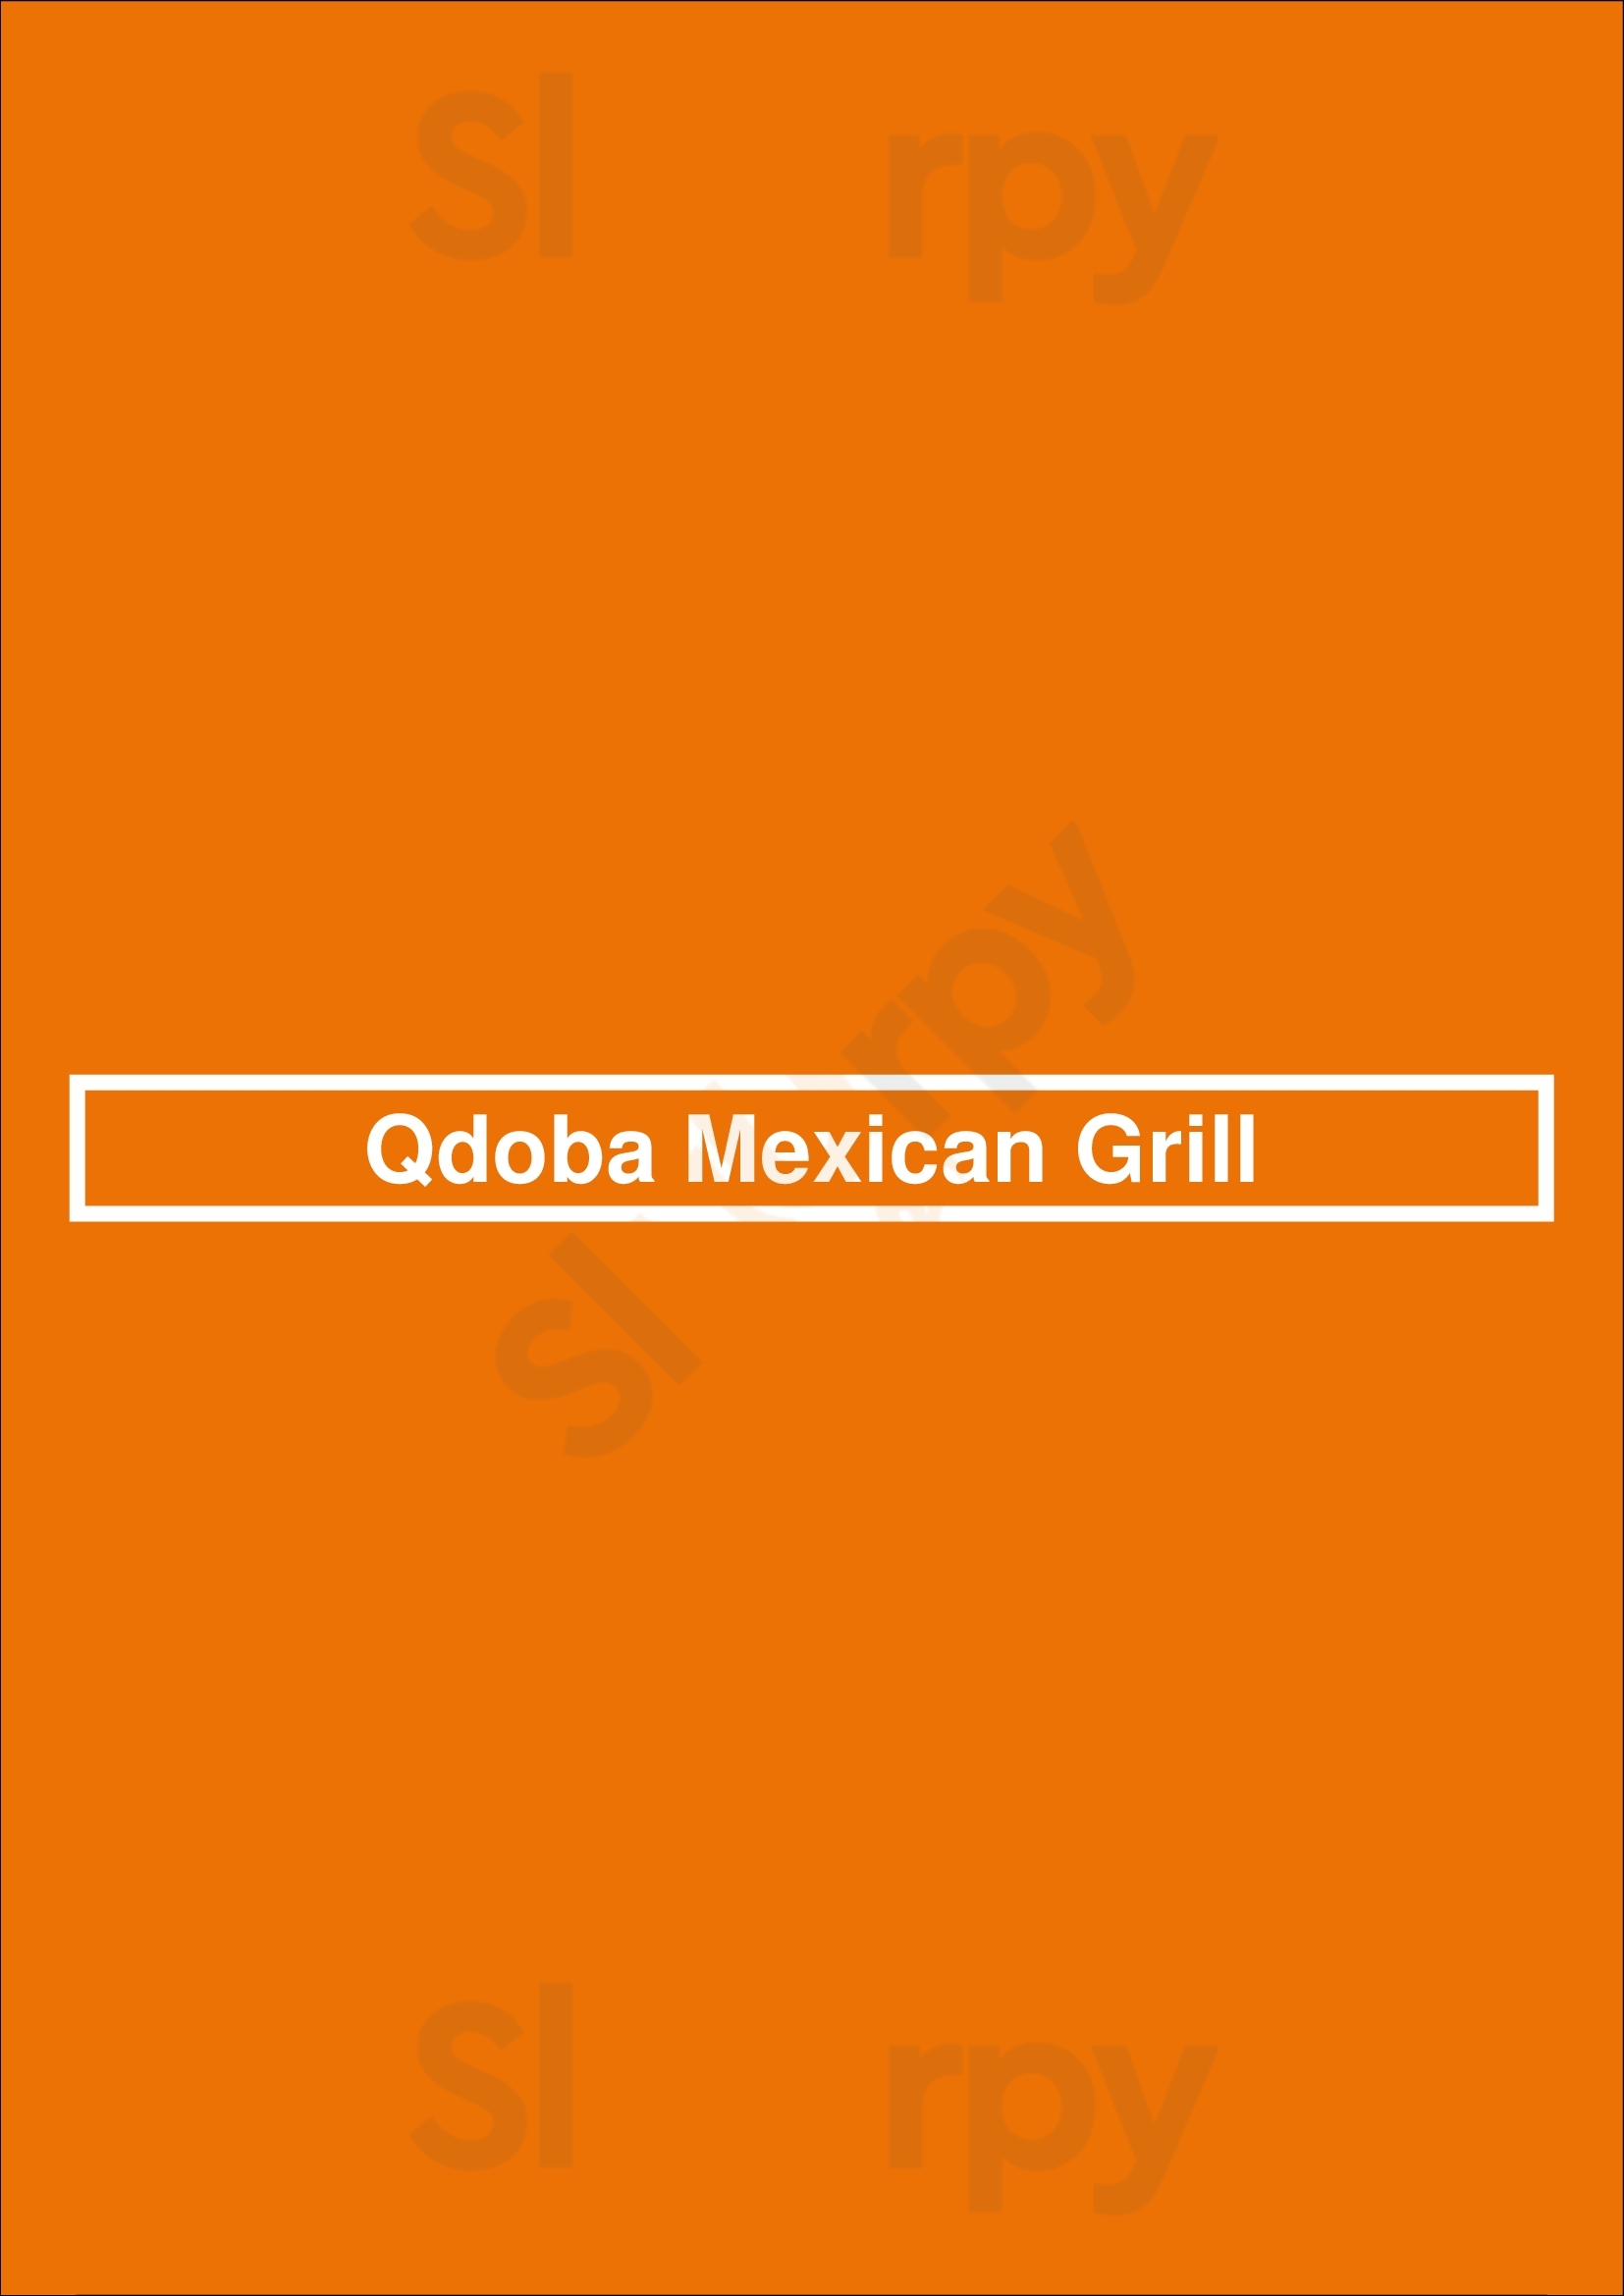 Qdoba Mexican Grill Denver Menu - 1